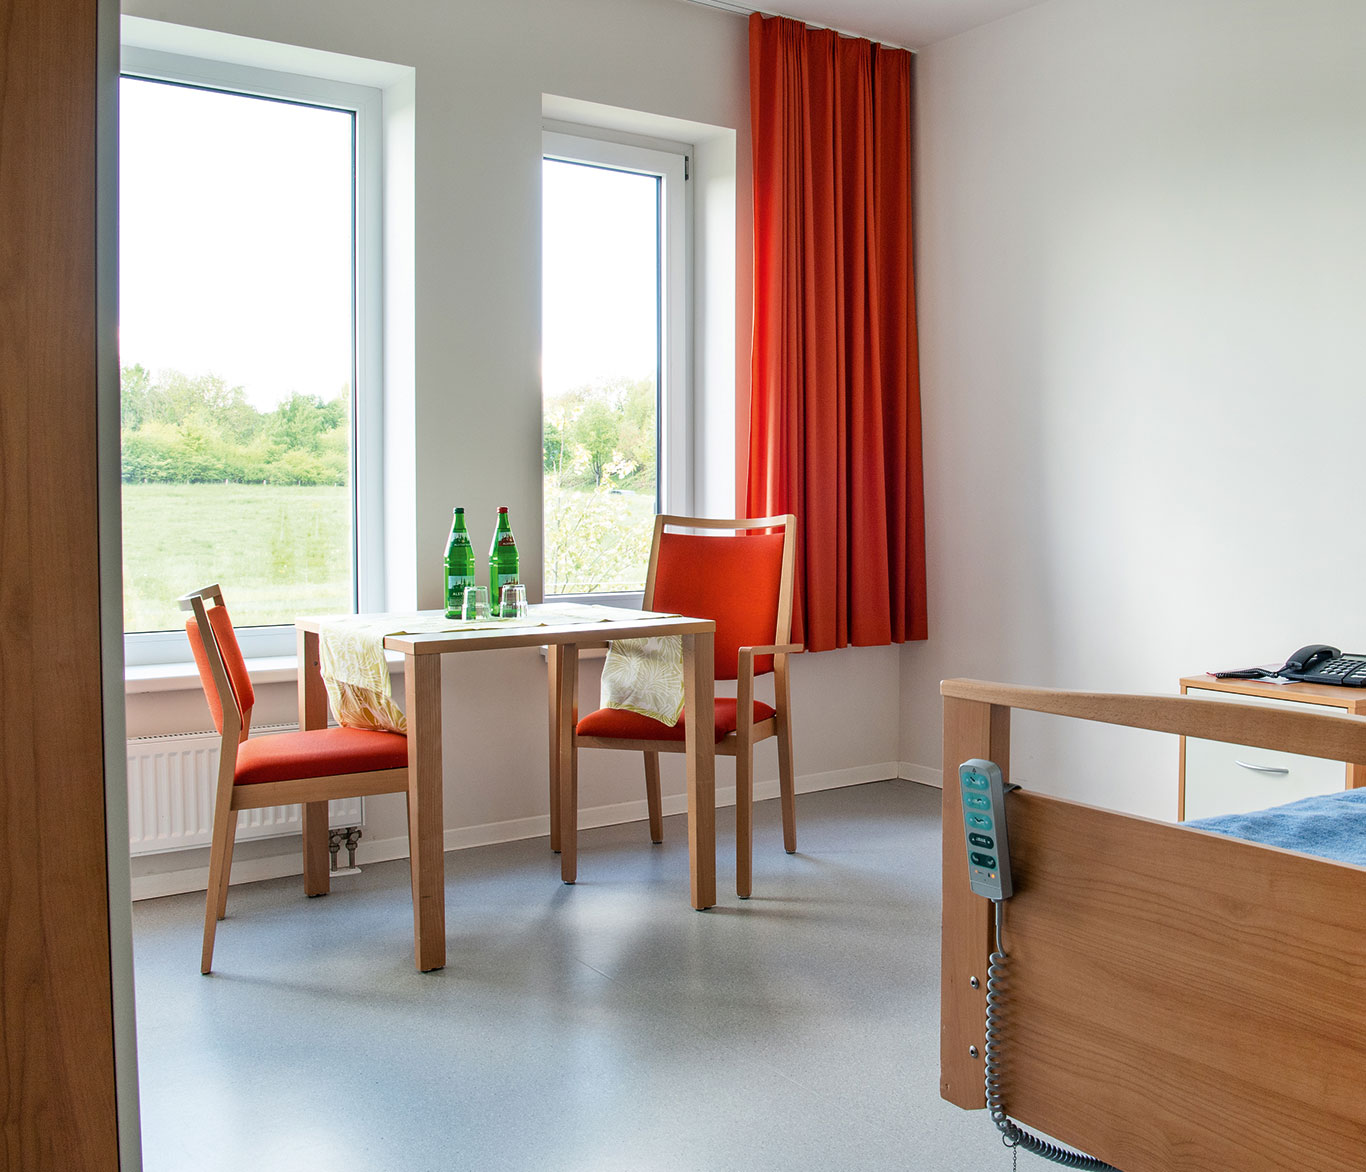 Blick in ein Zimmer in der Einrichtung der Seniorenpflege in Travemünde.